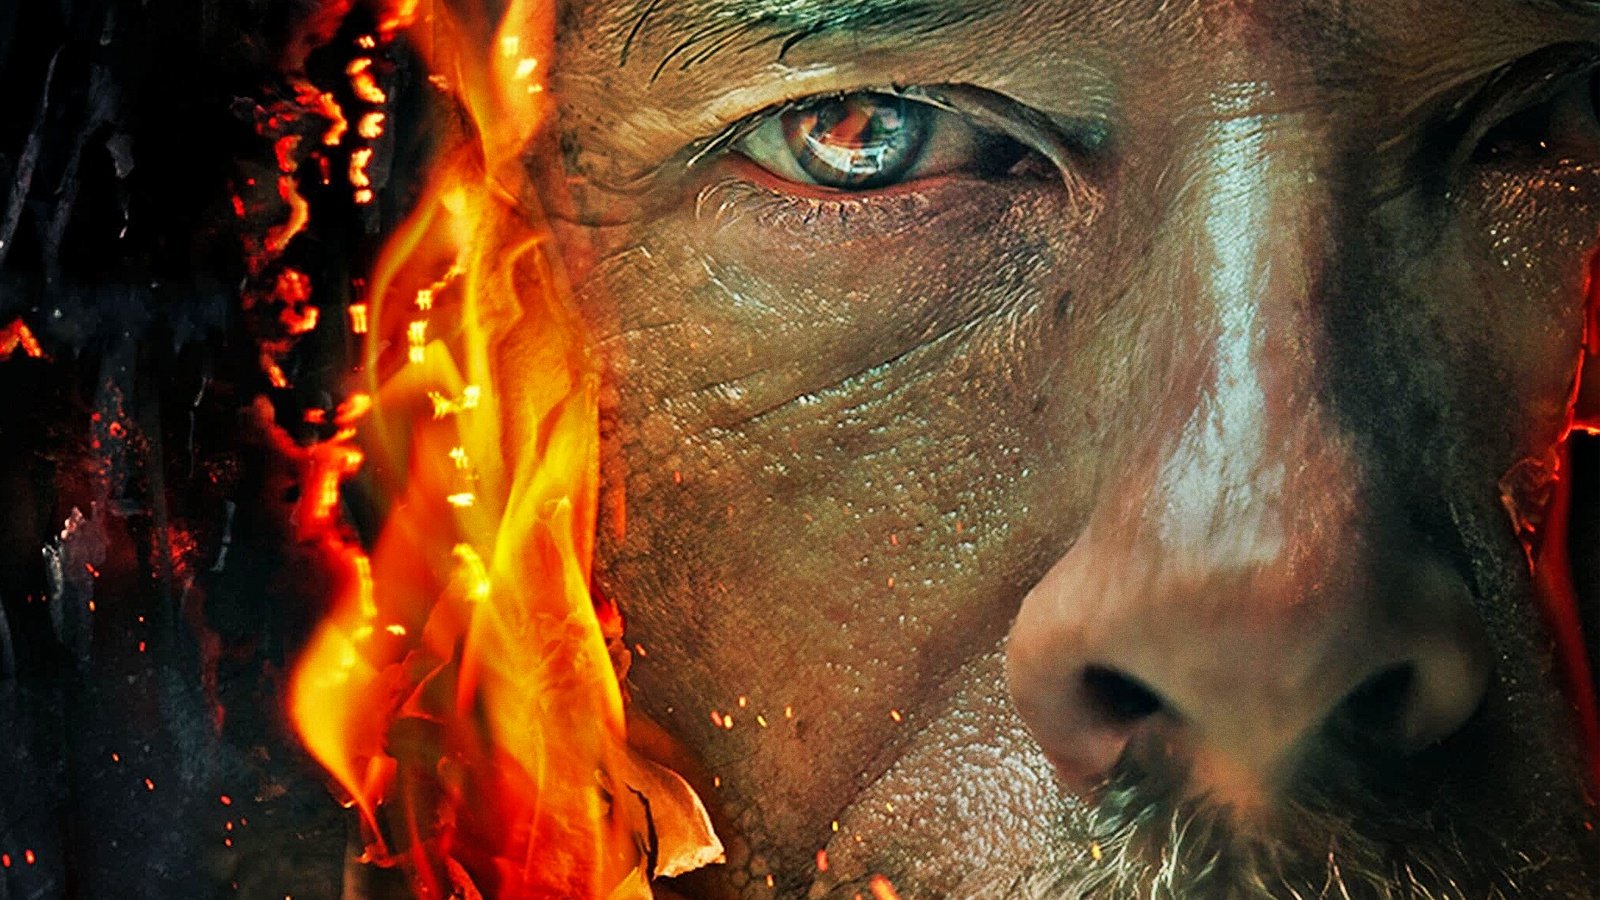 La macchina infernale, la recensione: Guy Pearce in un thriller conturbante